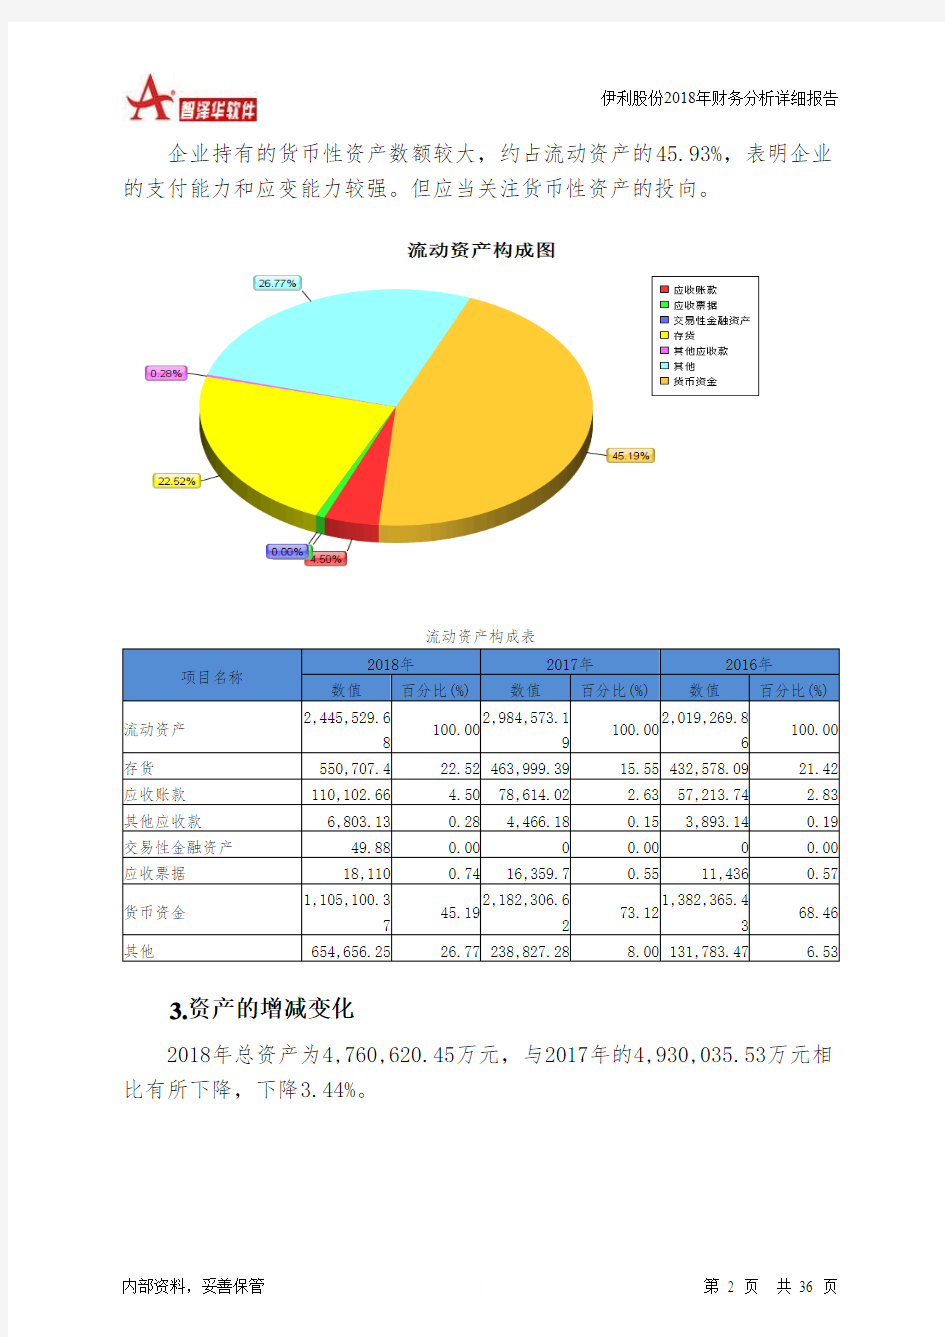 伊利股份2018年财务分析详细报告-智泽华